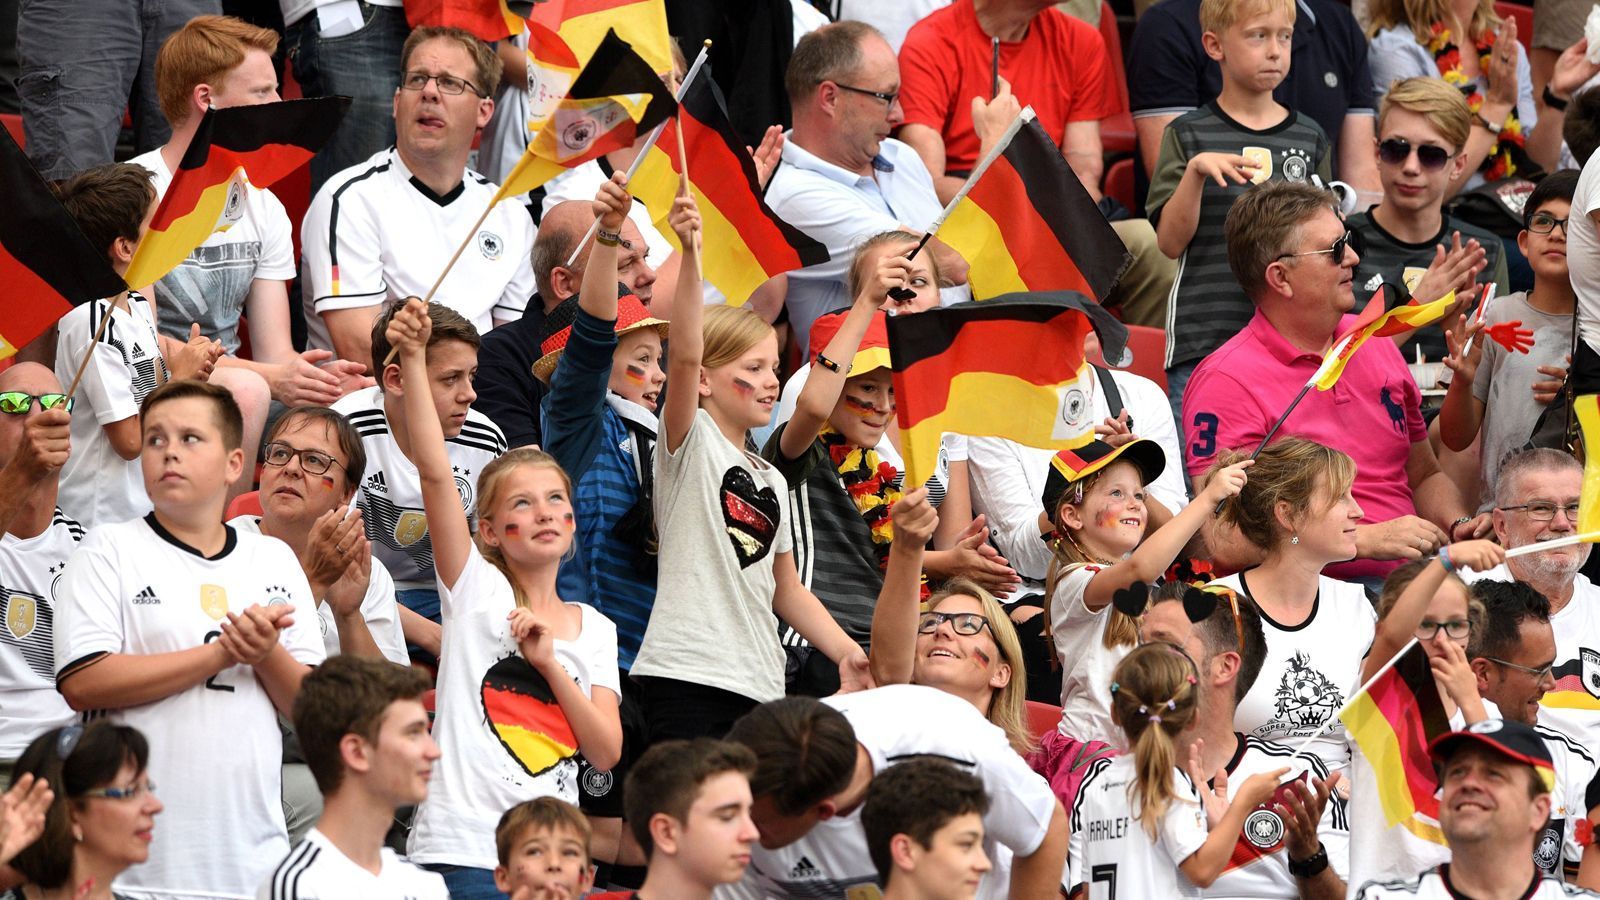 
                <strong>5. Platz: Deutschland (62.541 Tickets)</strong><br>
                Bei den Europäern bringt Deutschland die meisten Anhänger mit nach Russland. Der Traum von der Titelverteidigung lebt weiter.
              